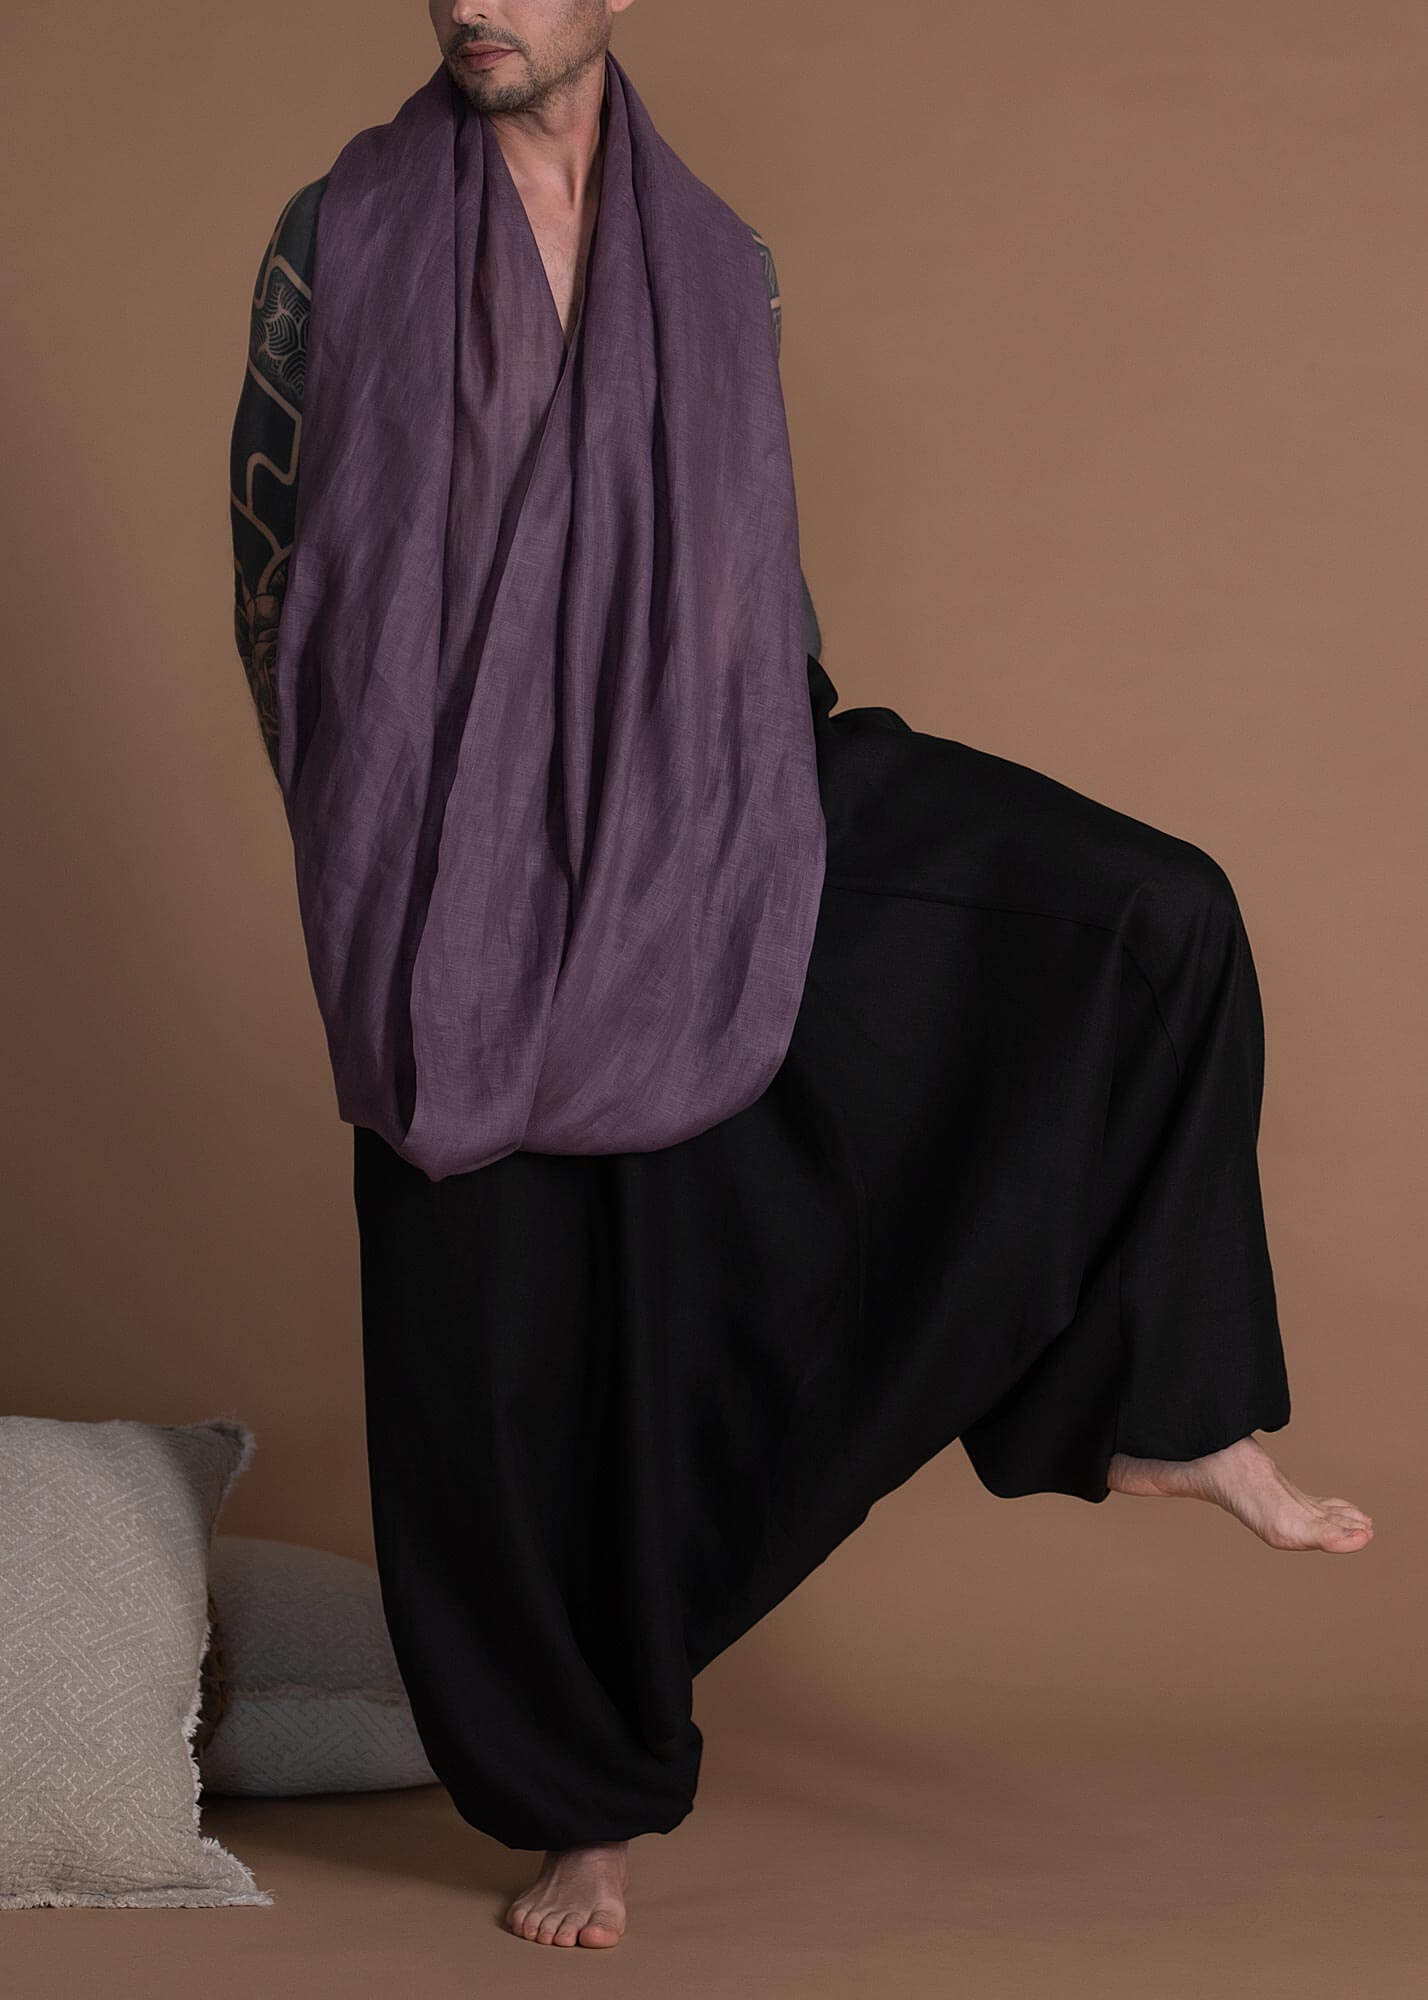 Black Unisex Lightweight Linen Aladdin Pants With Deep Pockets